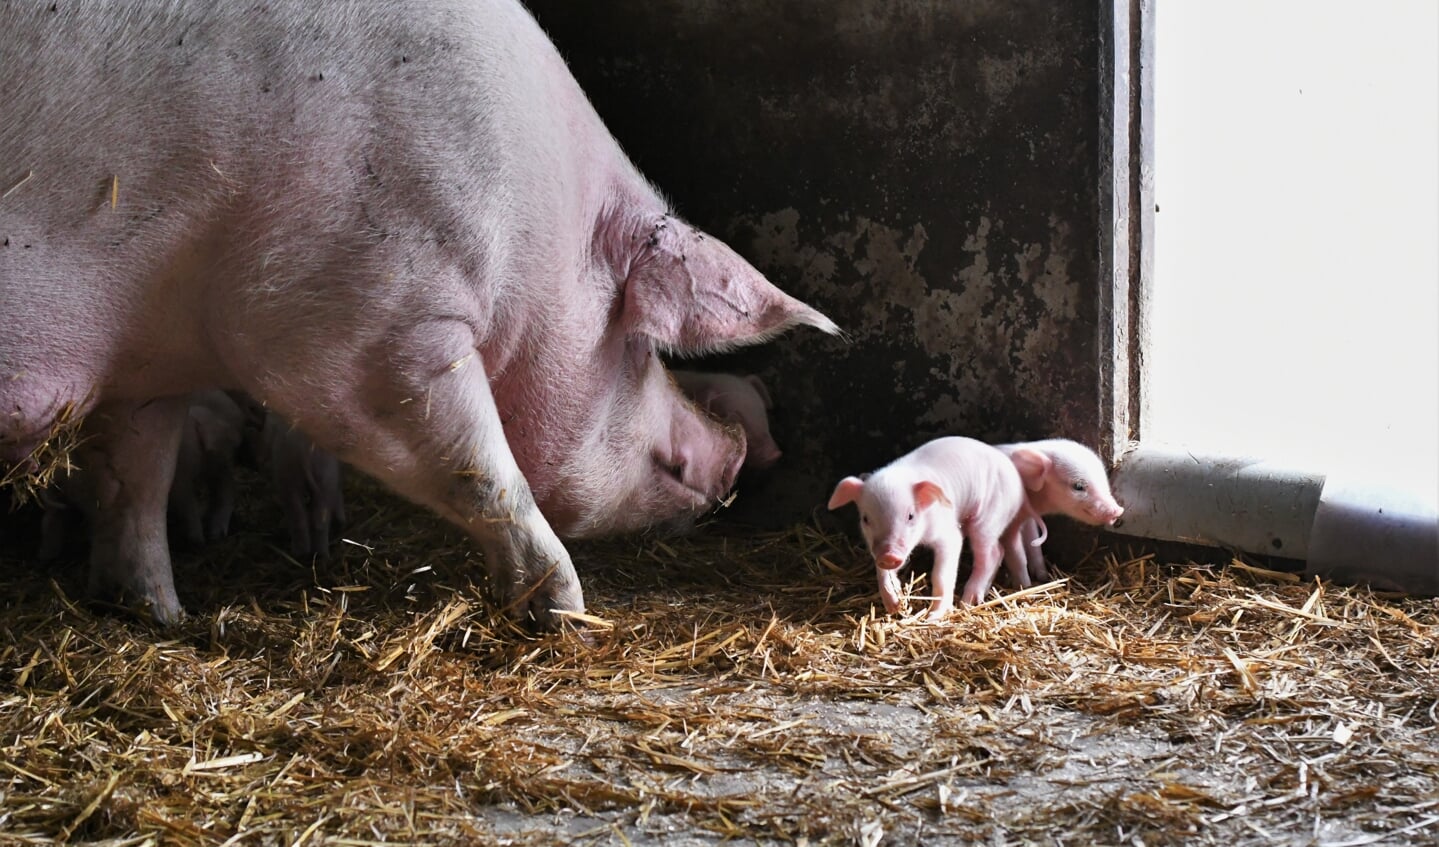 Zonvarken wil een varken fokken dat gezond is en haar biggen goed verzorgt.